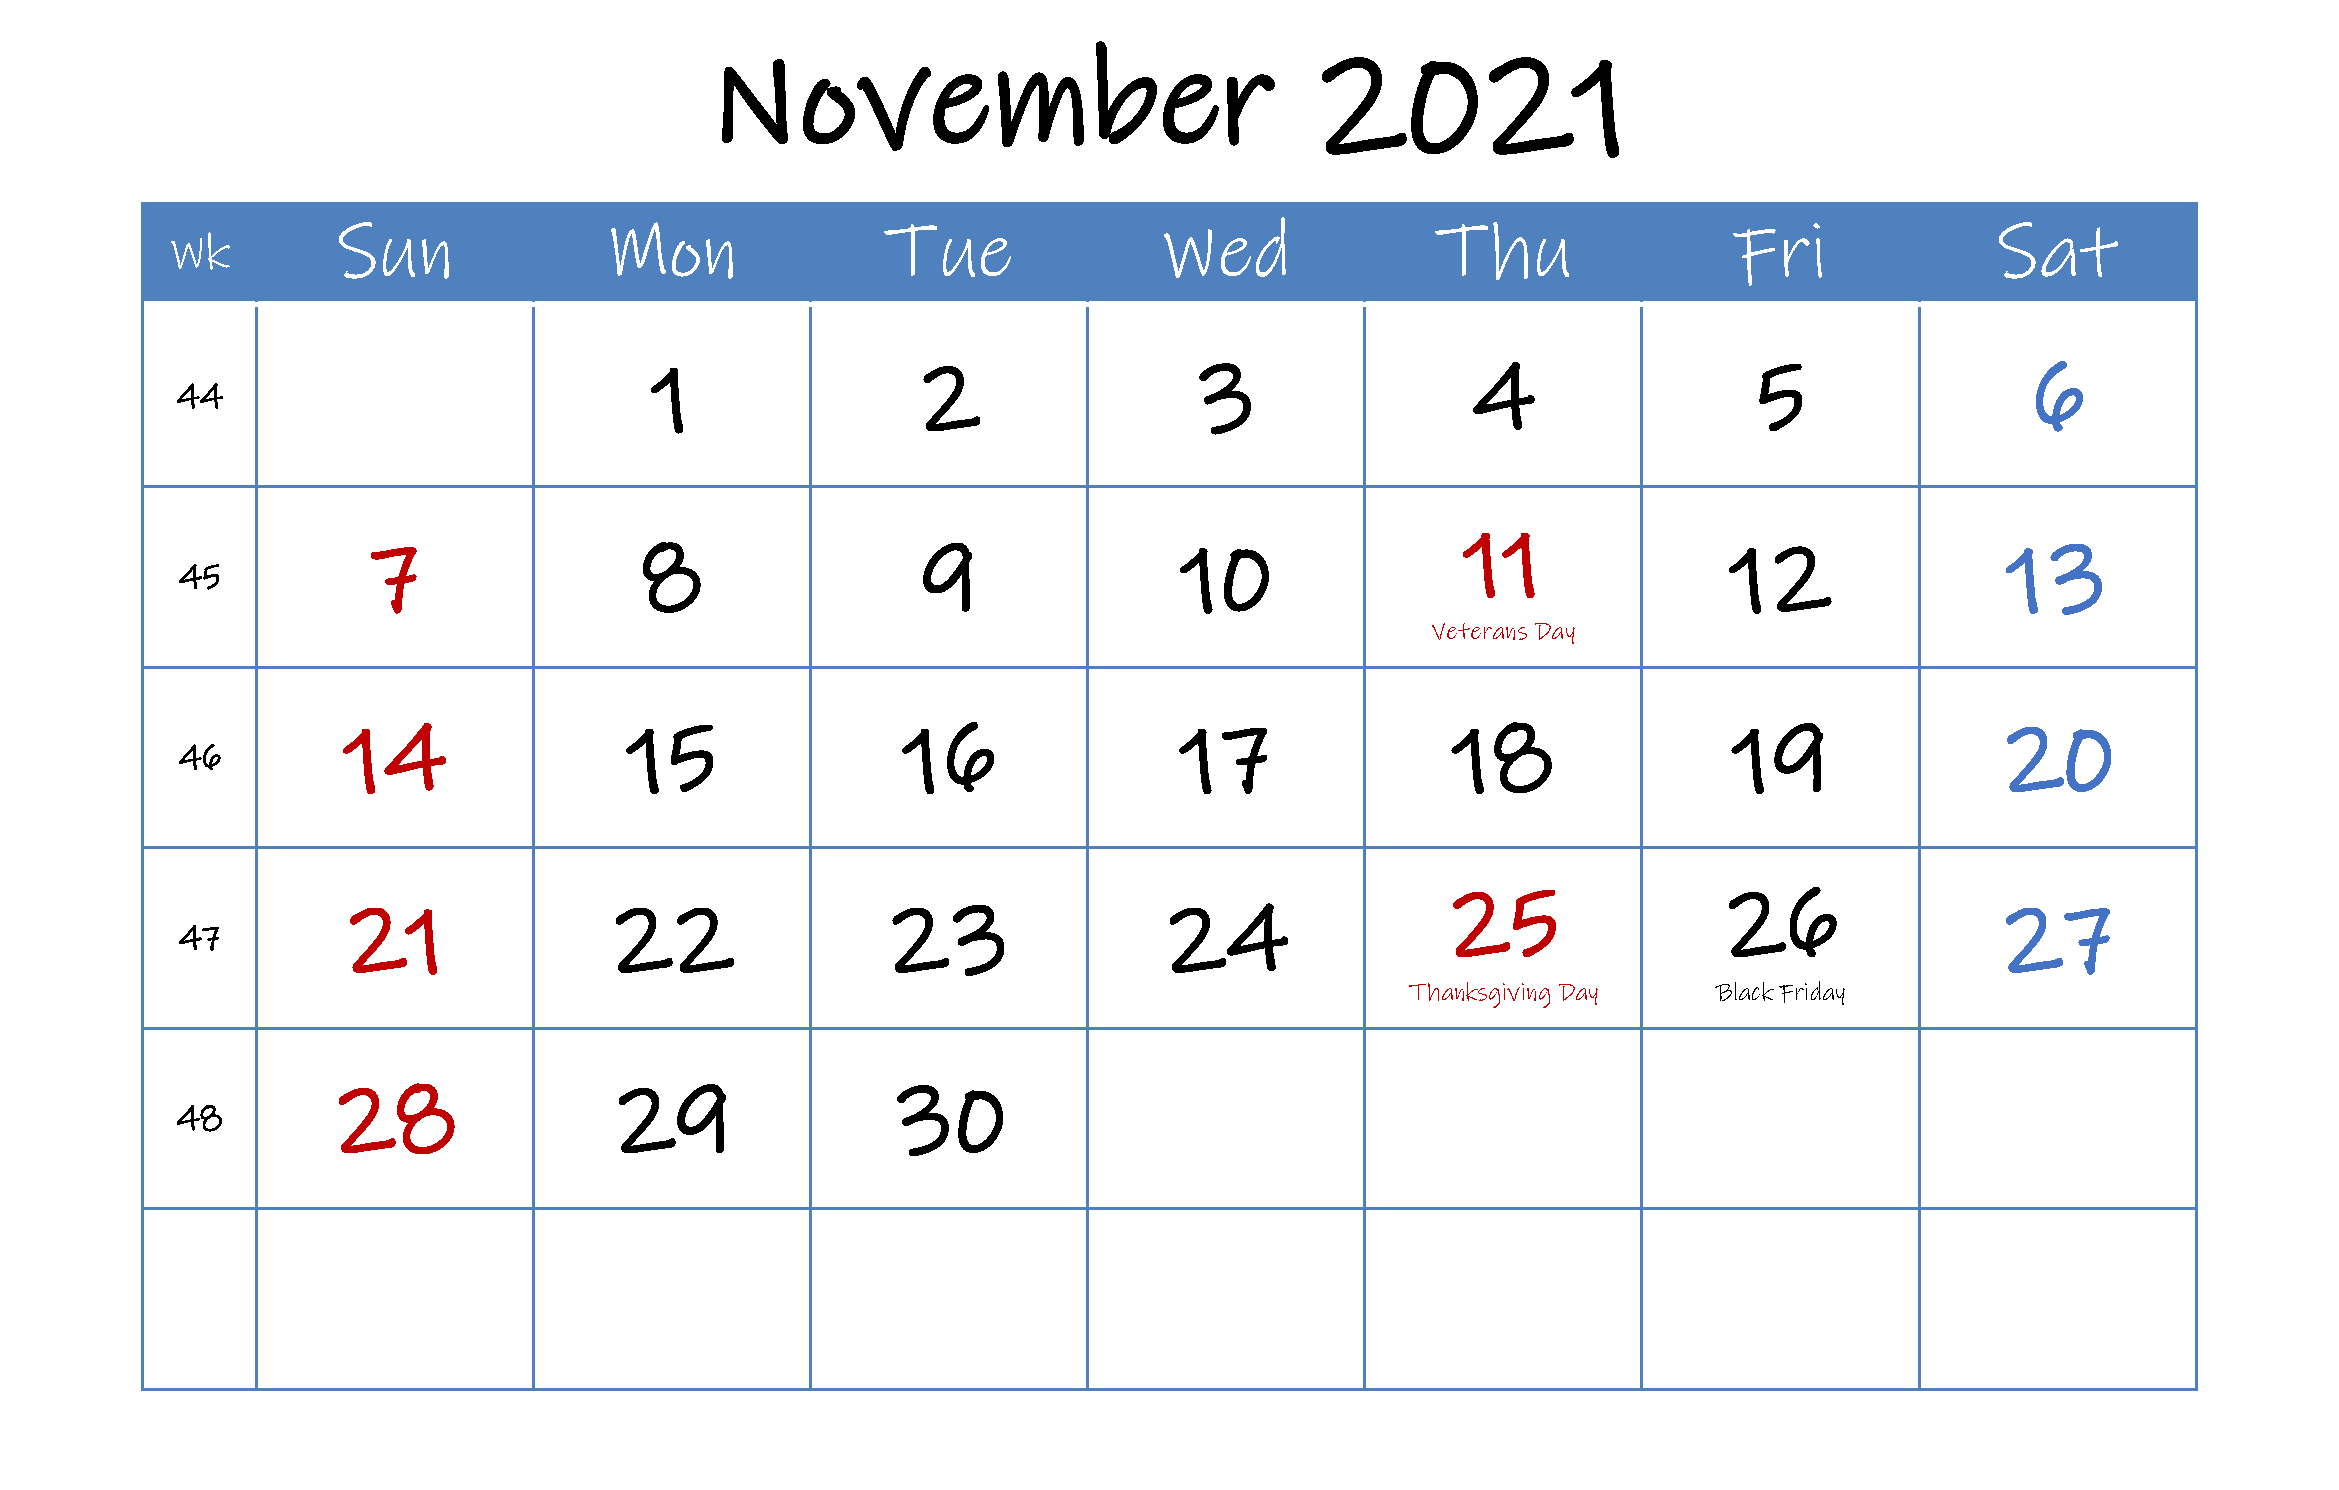 November 2021 Calendar With Holidays | Calendar Printables 2021 Calendar November Festival